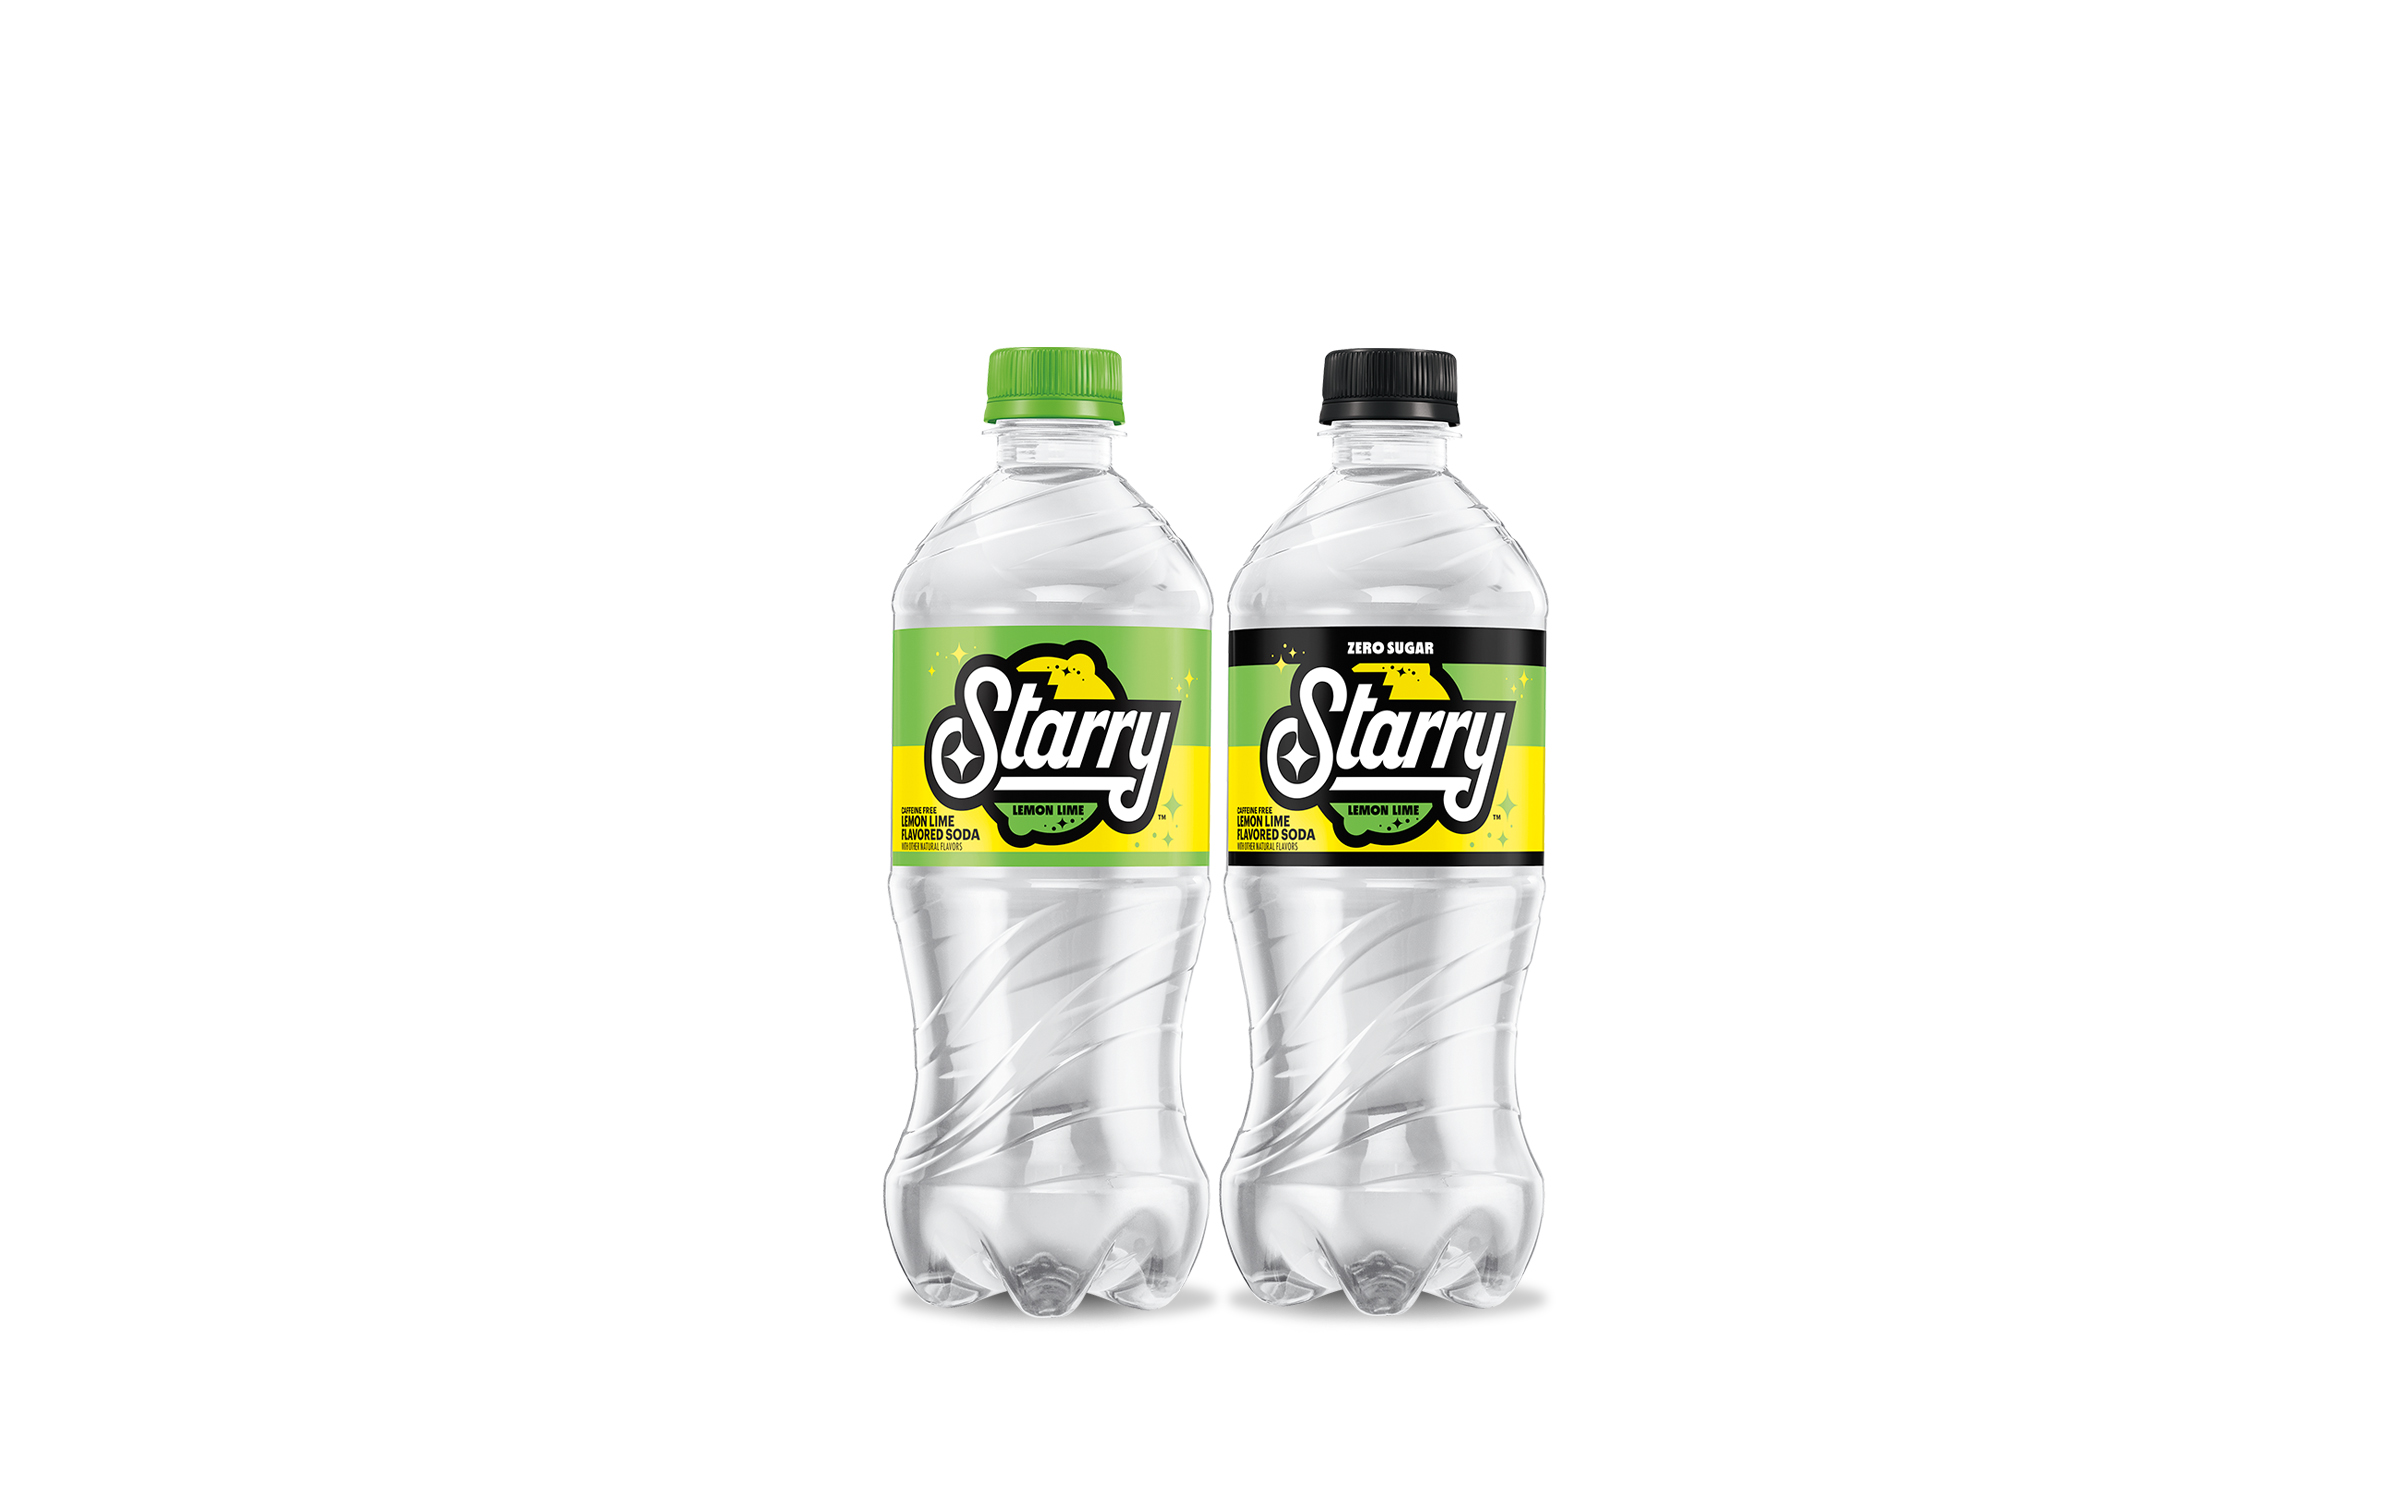 Starry Lemon Lime regular and Zero Sugar bottles